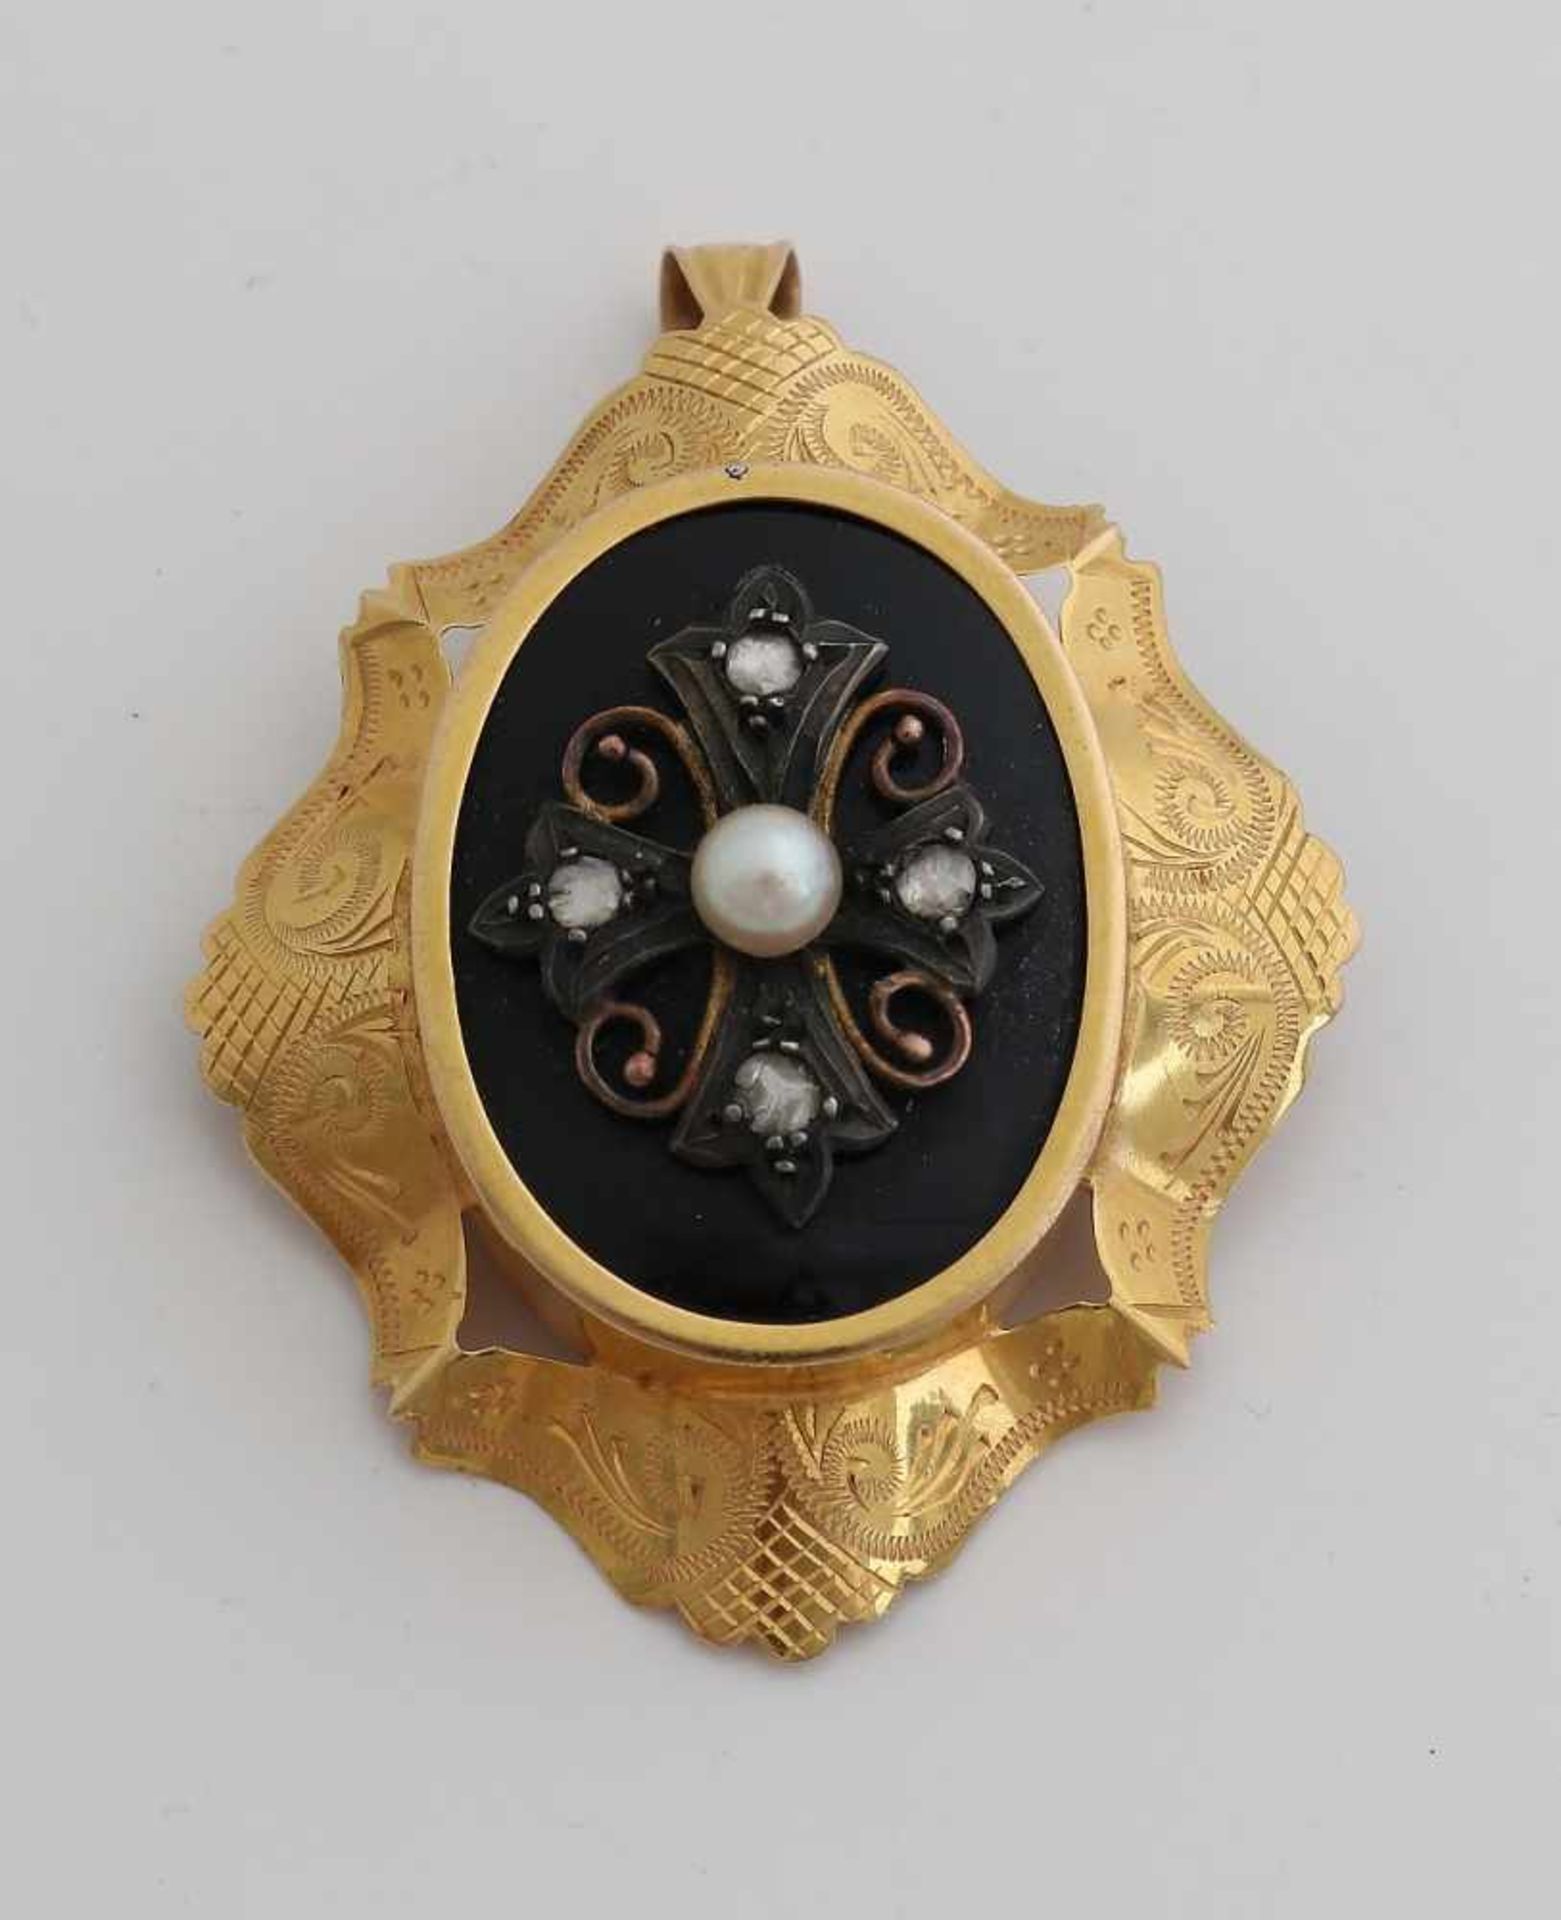 Großer Gelbgoldanhänger / Brosche, 585/000, mit Onyx und Diamant. Oval konturierte Brosche mit